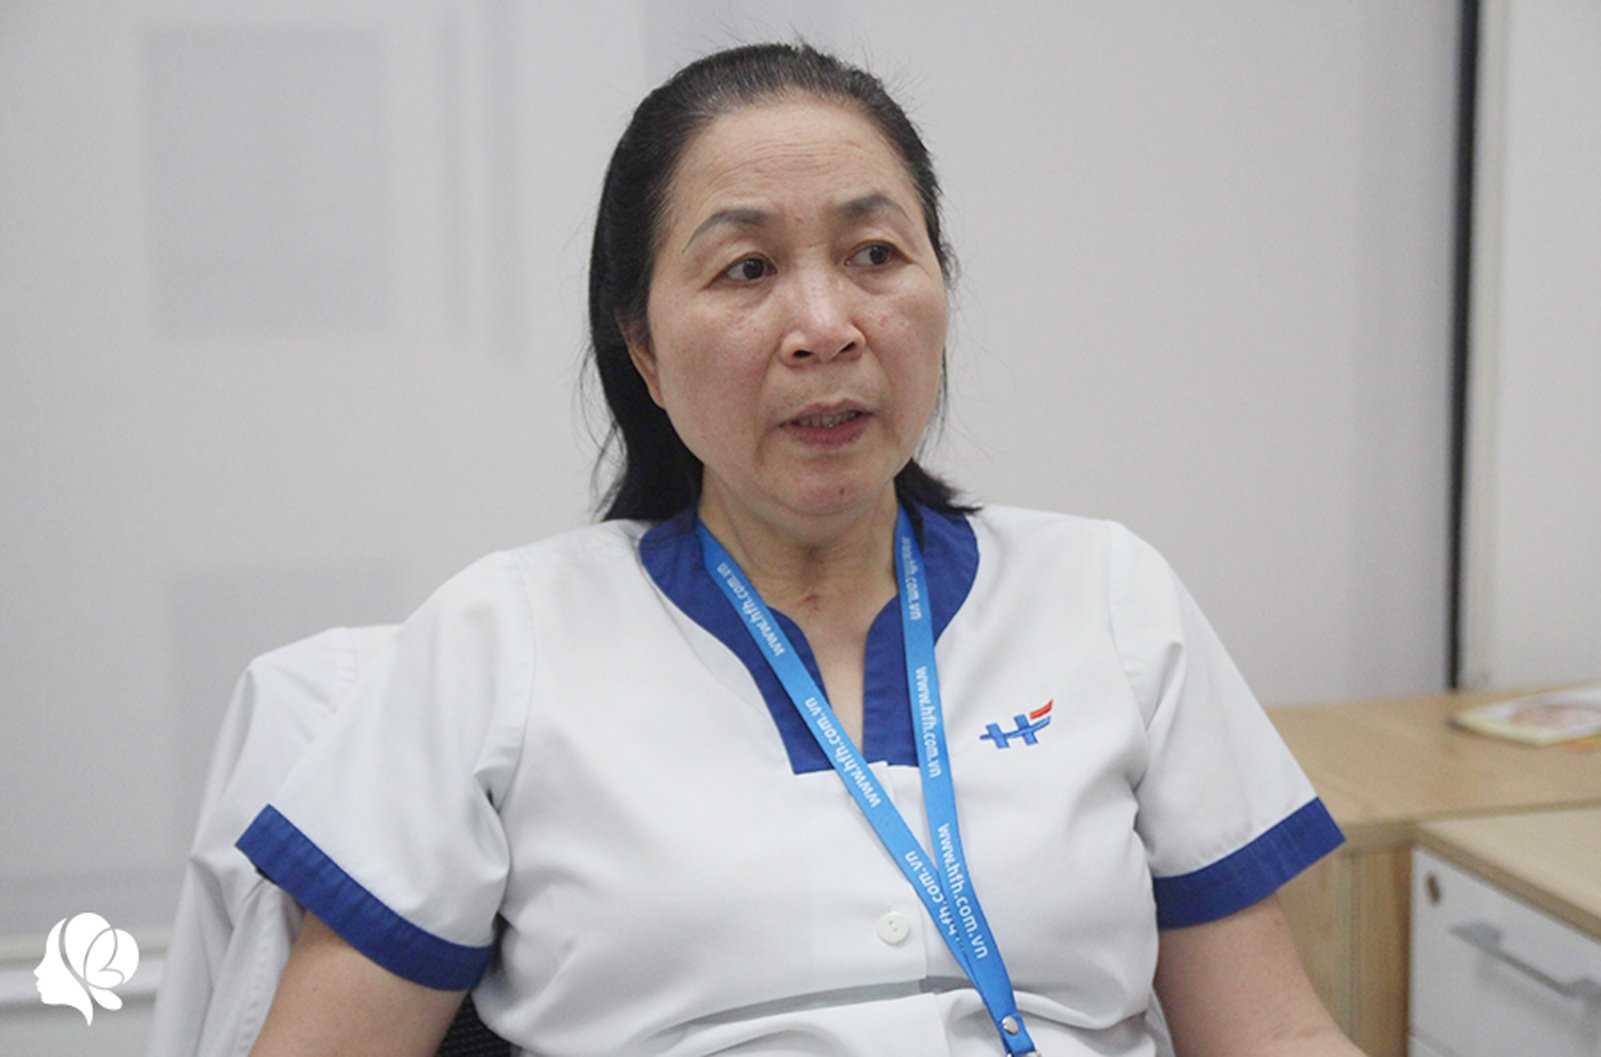 Nữ y tá thoát chết trong dịch SARS: “Tôi bị liệt, nhưng không đau bằng nghe một bản tin” - 16